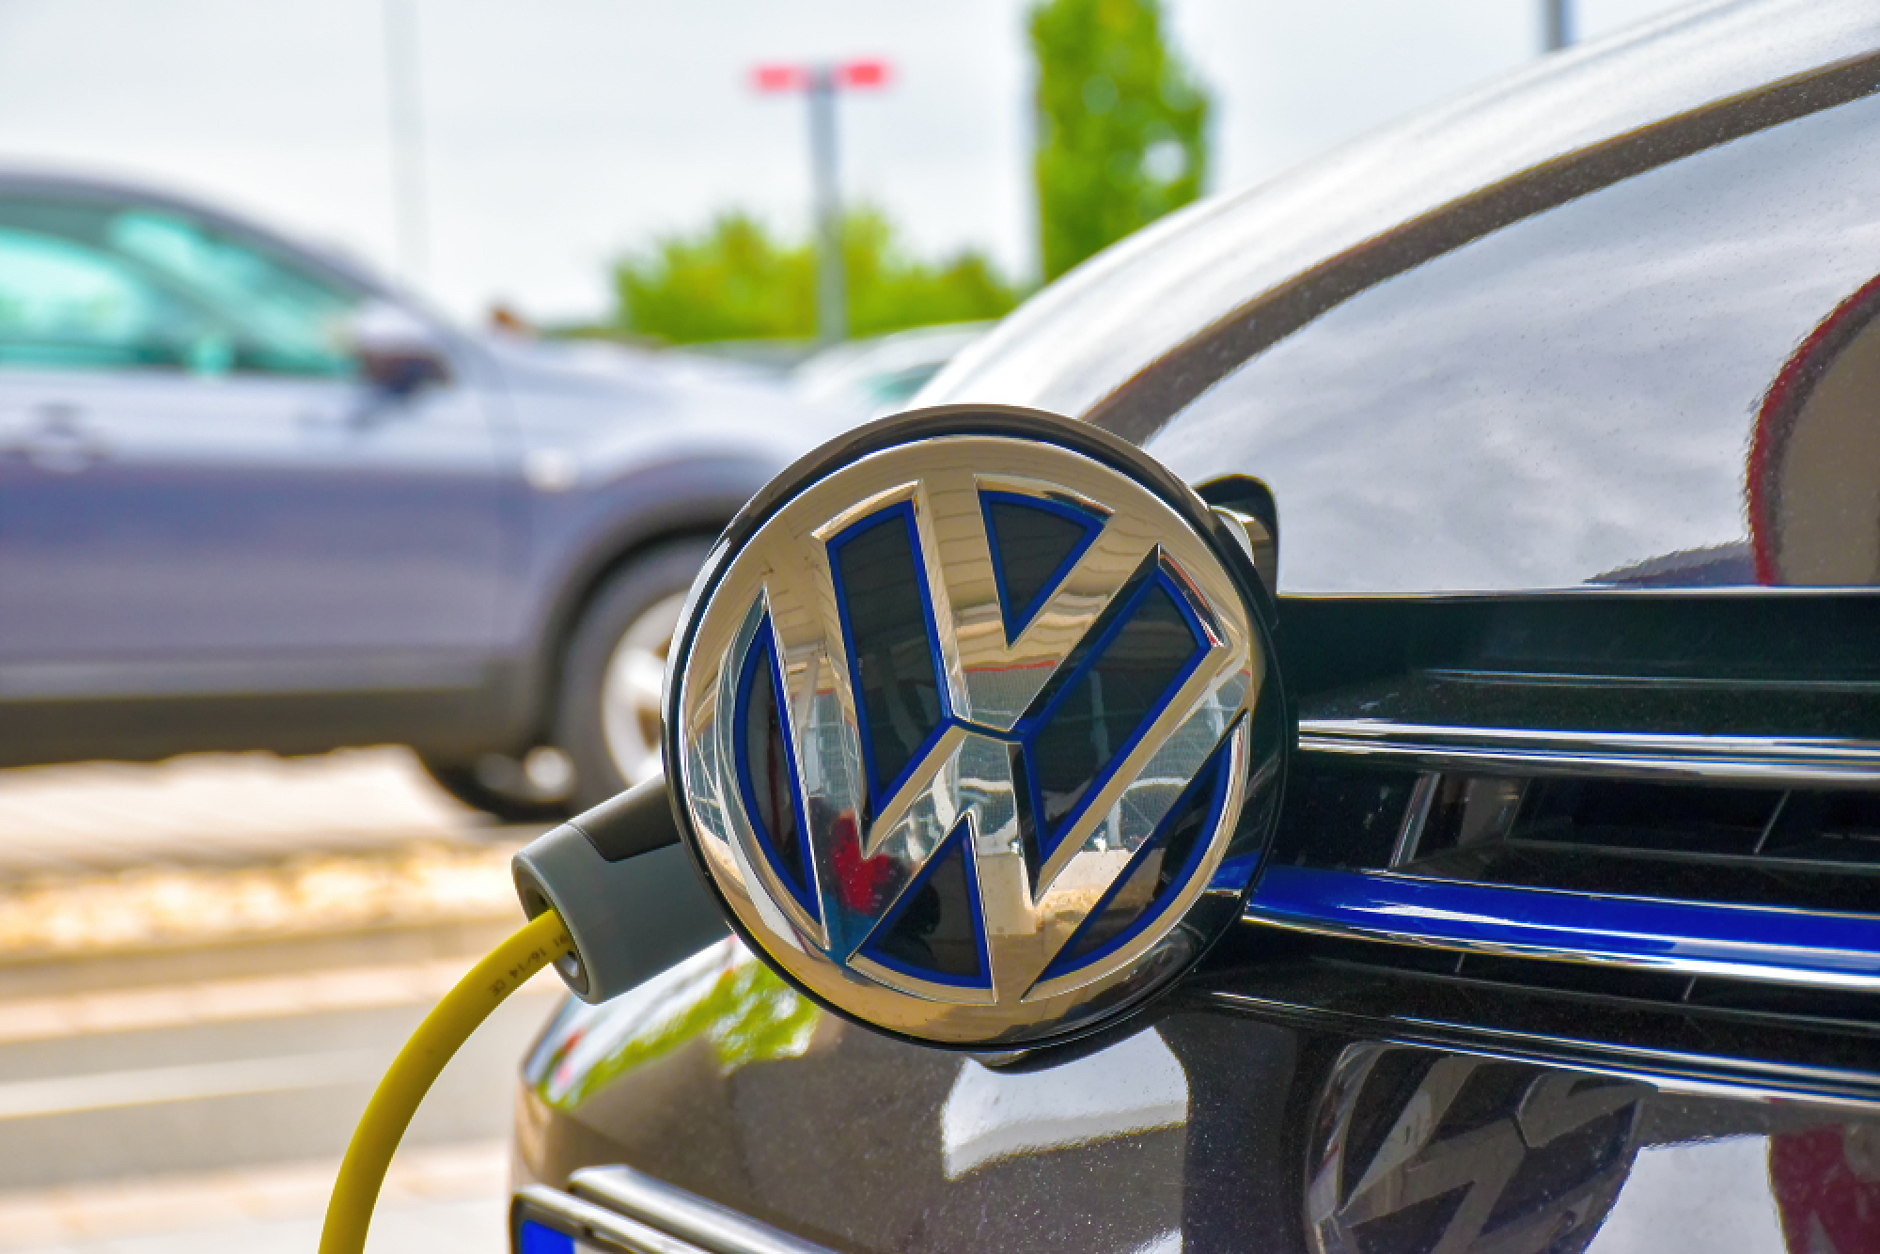 Volkswagen е успяла да увеличи глобалните продажби на автомобили с 12 на сто 